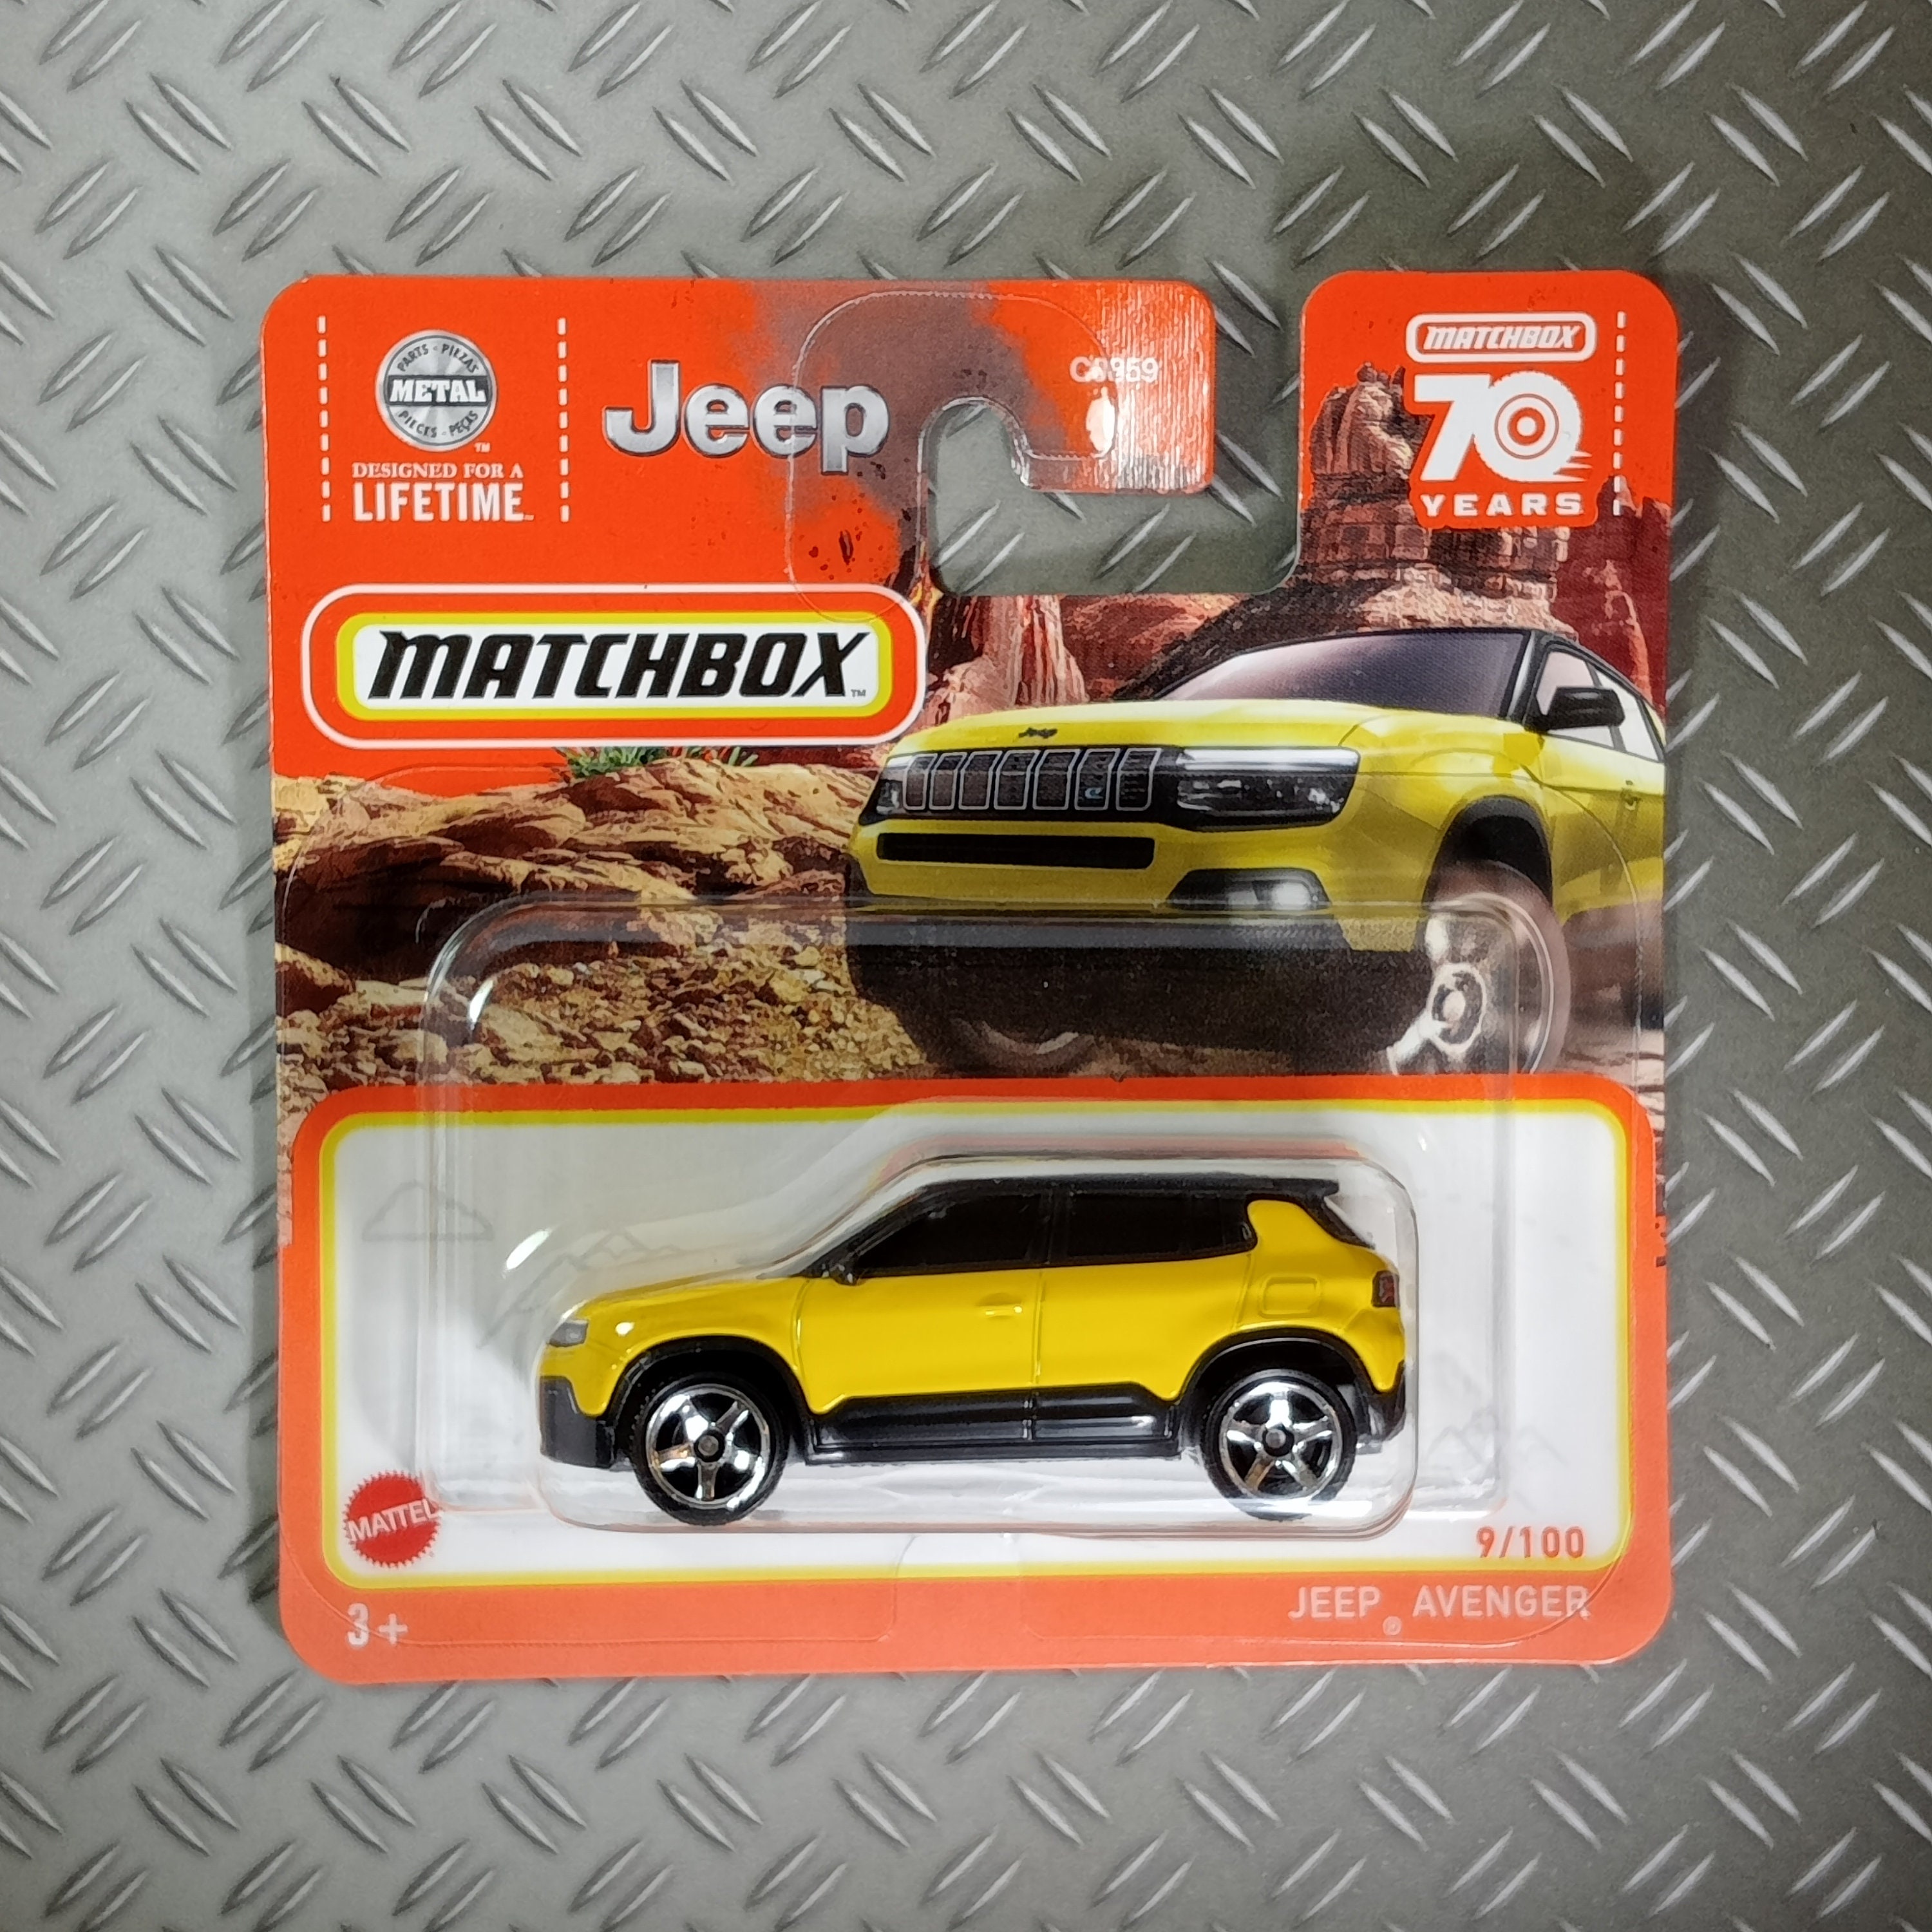 Matchbox Jeep Avenger raro modello da collezione in miniatura scala 1:64  idea regalo spedizione gratuita -  Italia